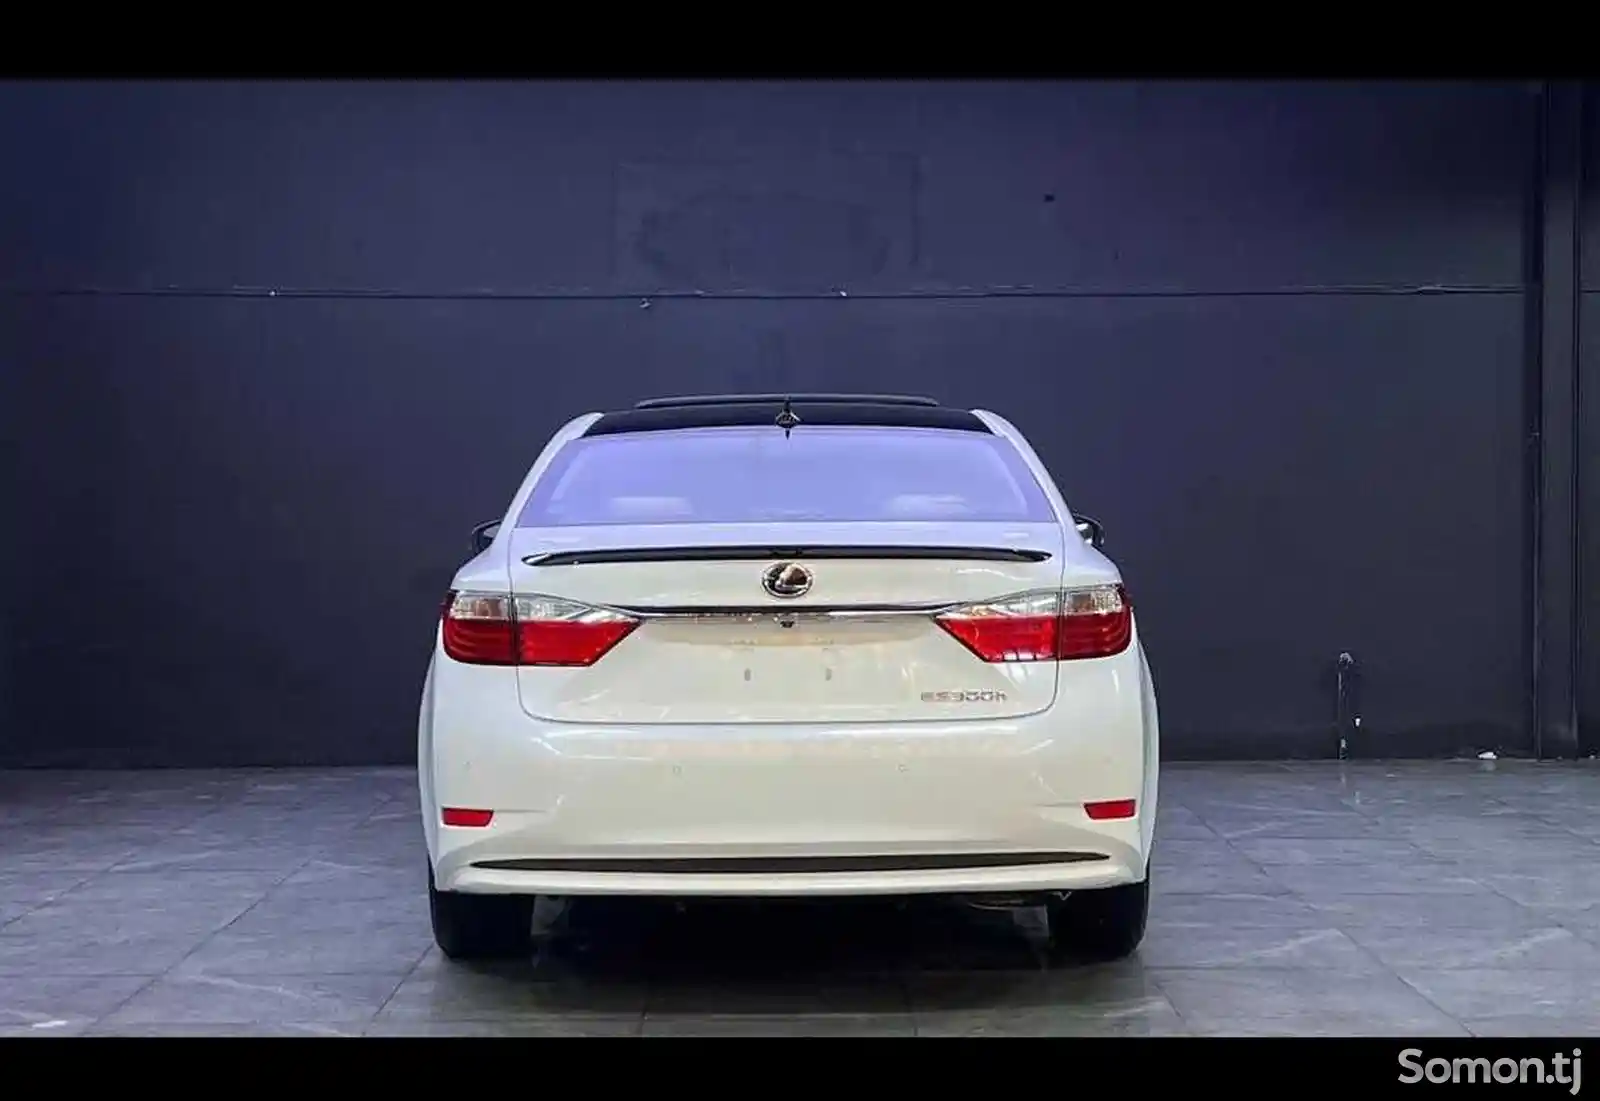 Lexus ES series, 2015-2